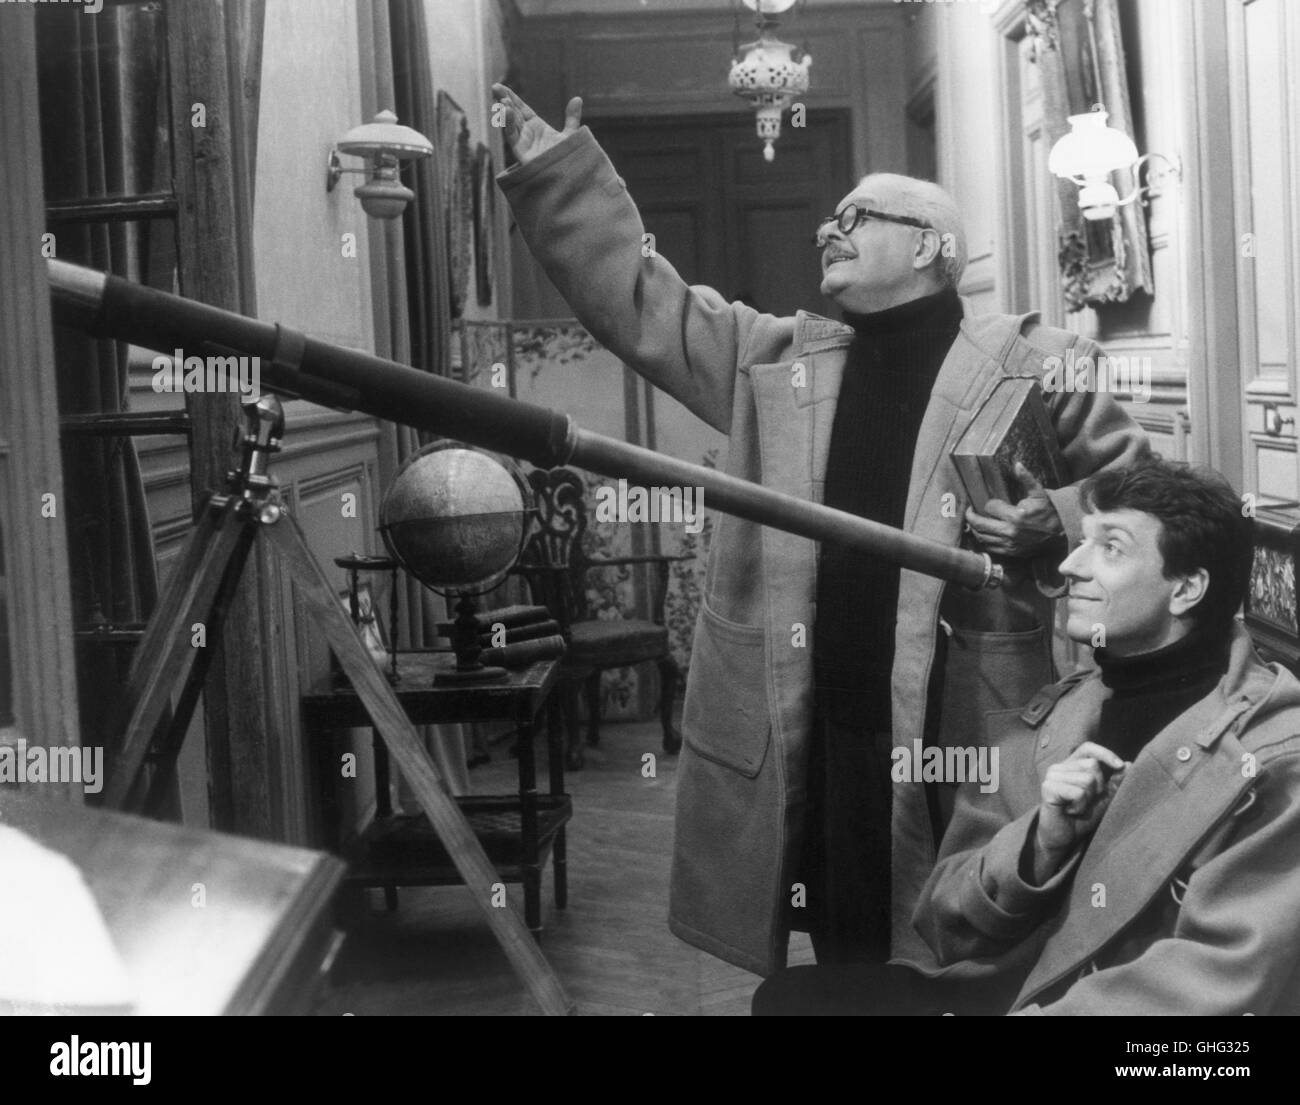 PAOLO STOPPA (Professor Gaetano), JEAN-PIERRE CASSEL (Antoine con telescopio) Regie di Philippe de Broca Foto Stock